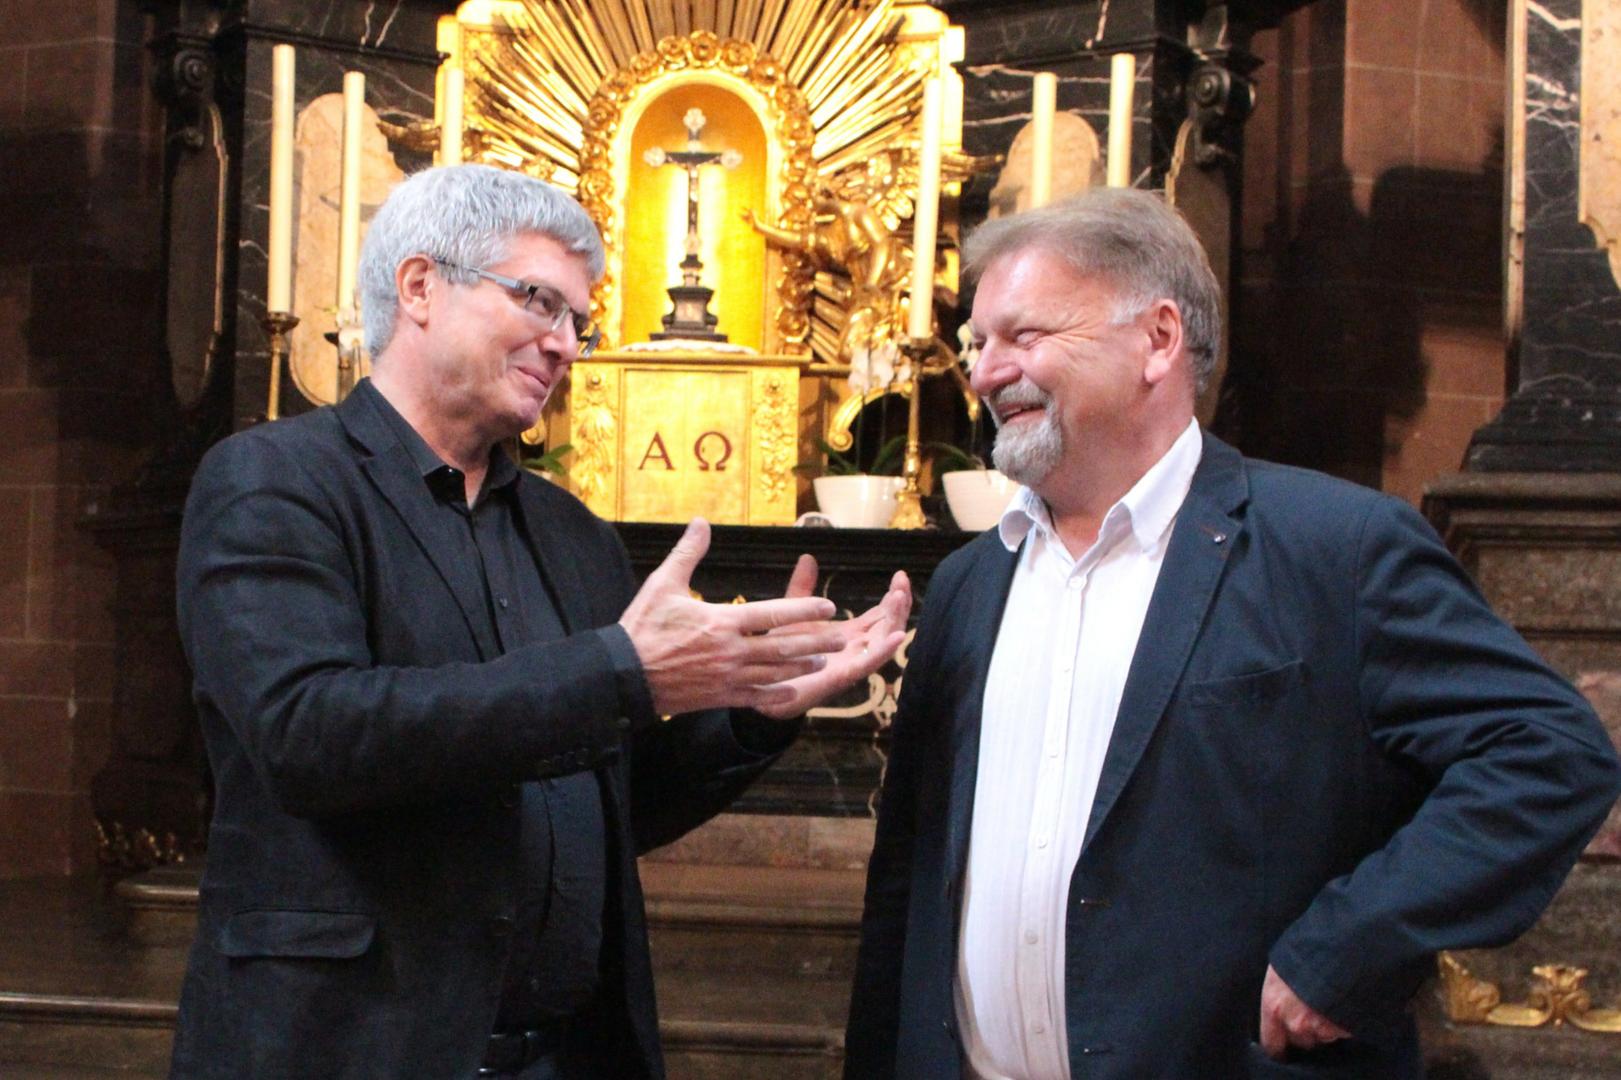 Thomas Klumb (rechts) im Mai 2018 bei der Vorstellung des VR-Brillen-Projektes im Wormser Dom zusammen mit Dr. Michael Klein, Leiter des Institutes für Neue Medien Frankfurt, welches das VR-Projekt maßgeblich unterstützt hat. (c) Bistum Mainz / Blum